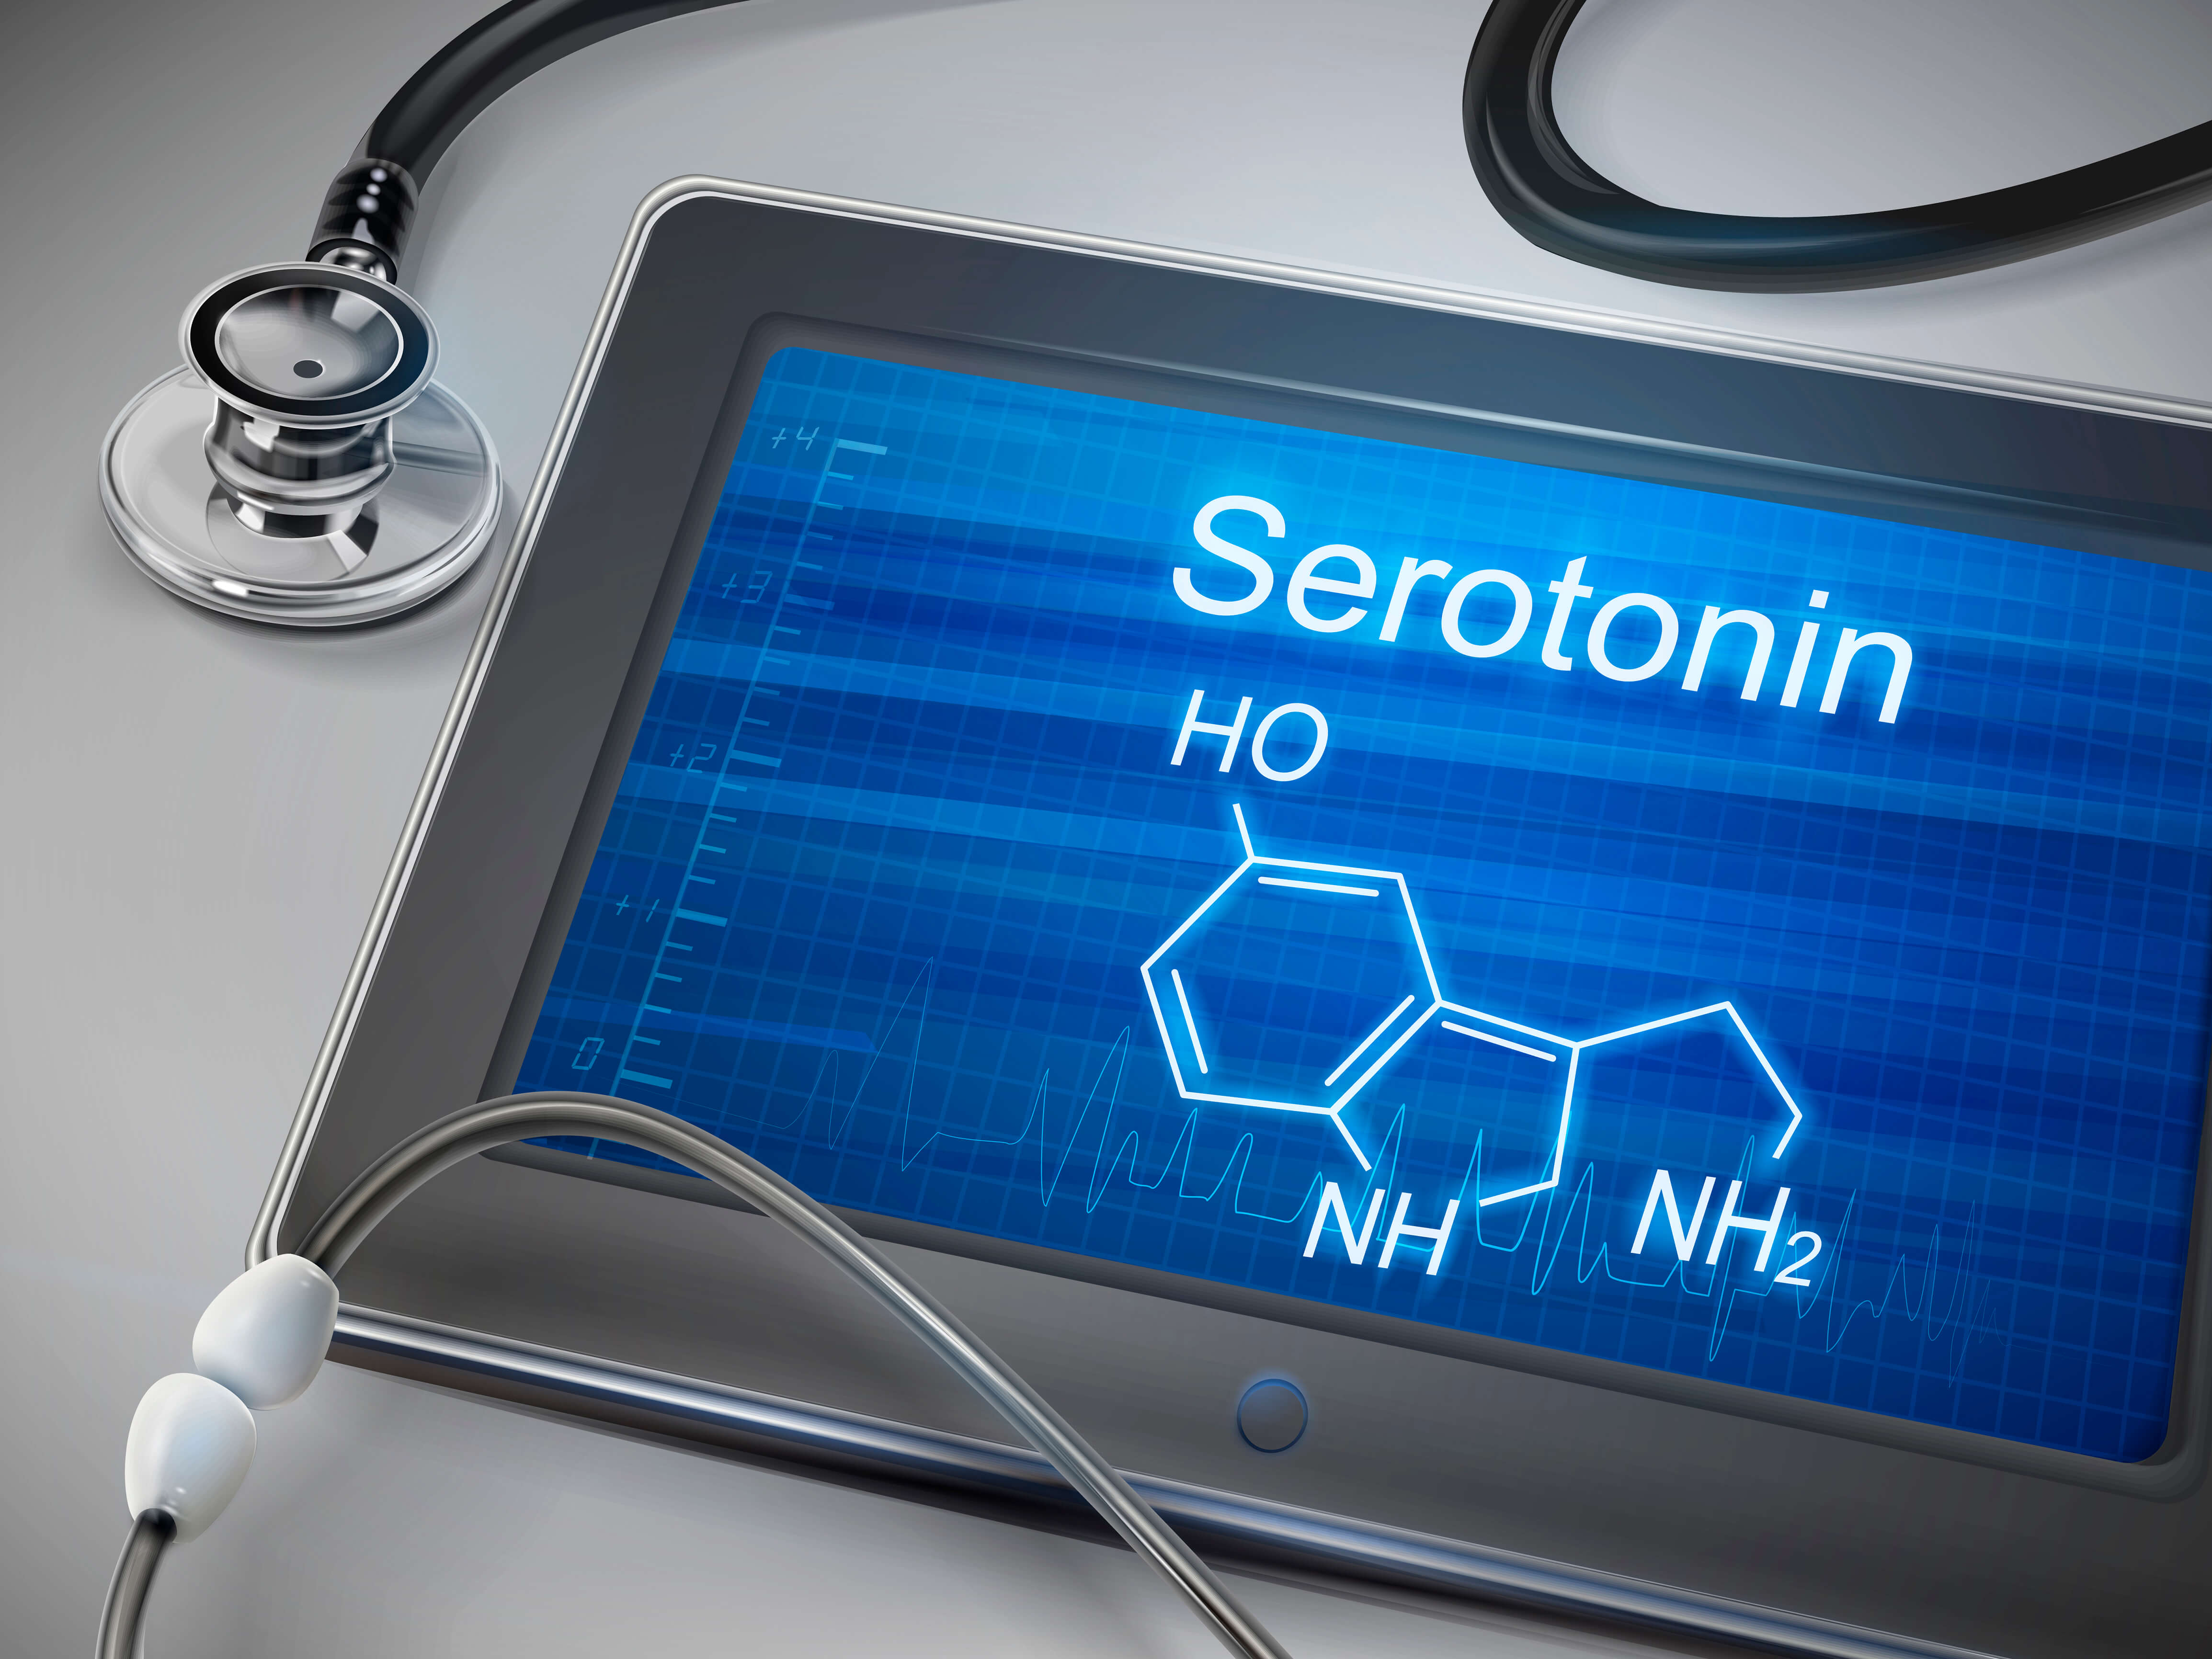 A szerotoninszint növelése: A mentális egészség és a jó hangulat kulcsa